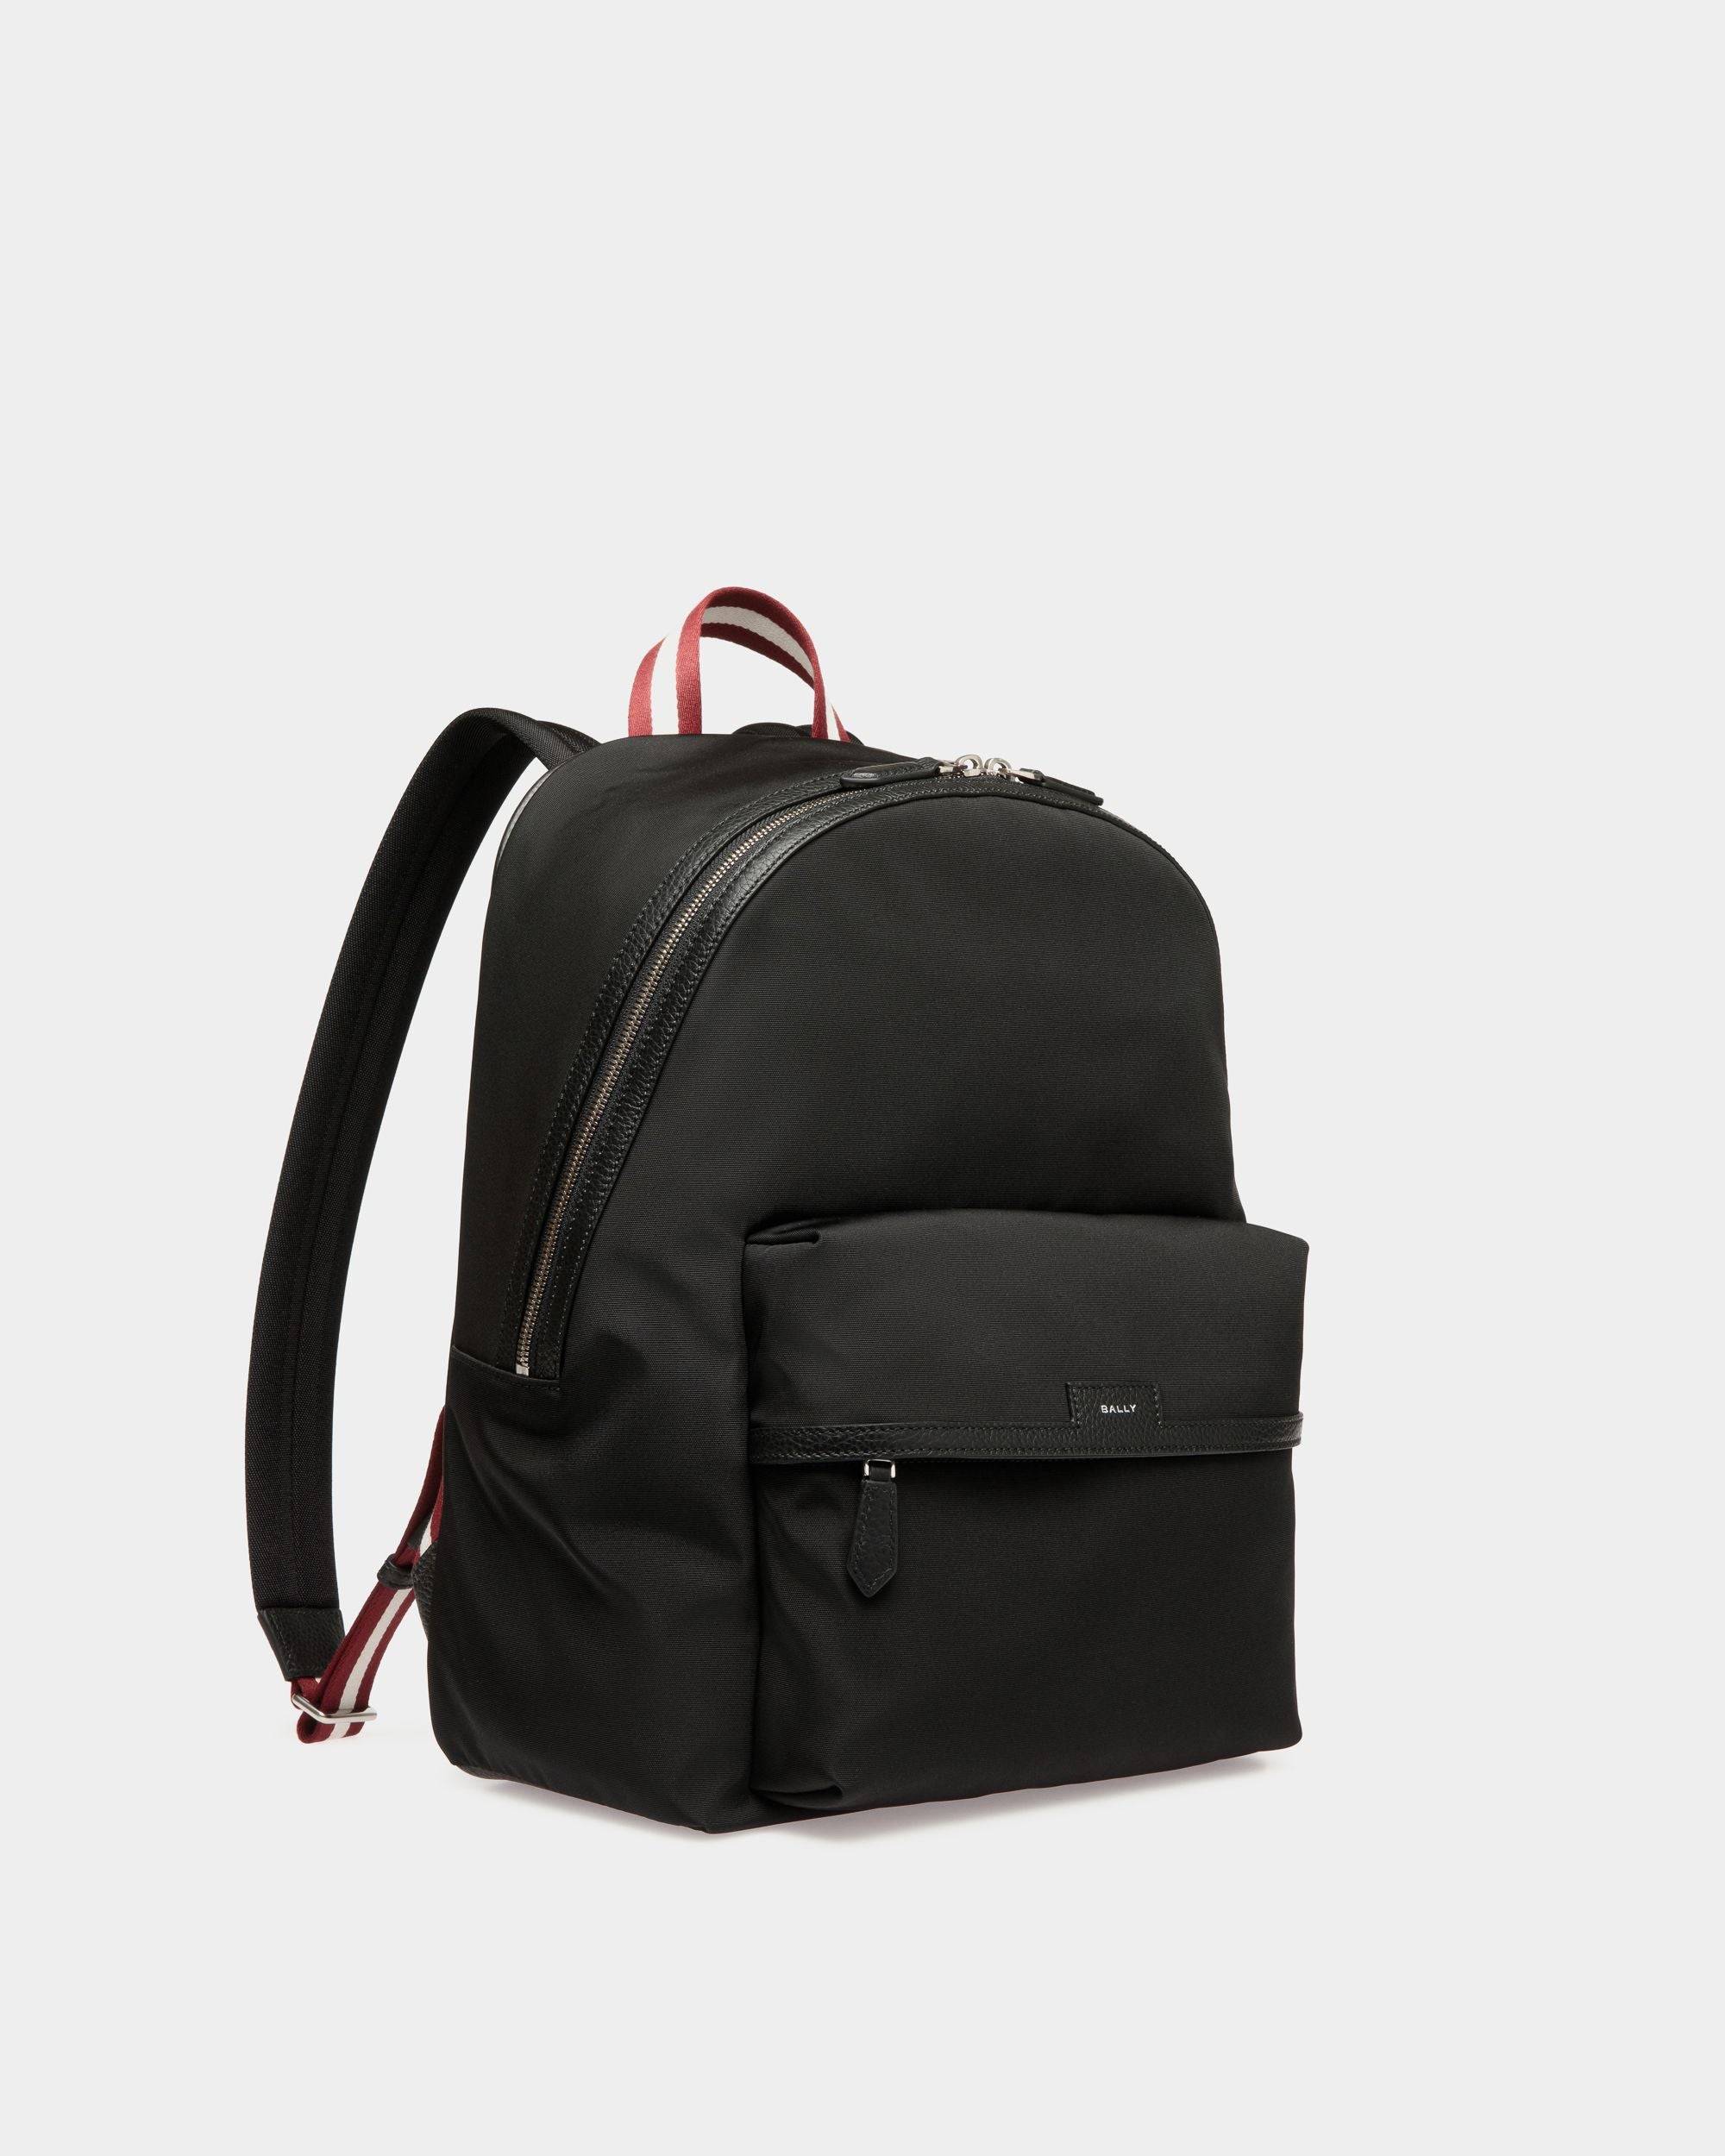 Code Backpack in Black Nylon - Men's - Bally - 03